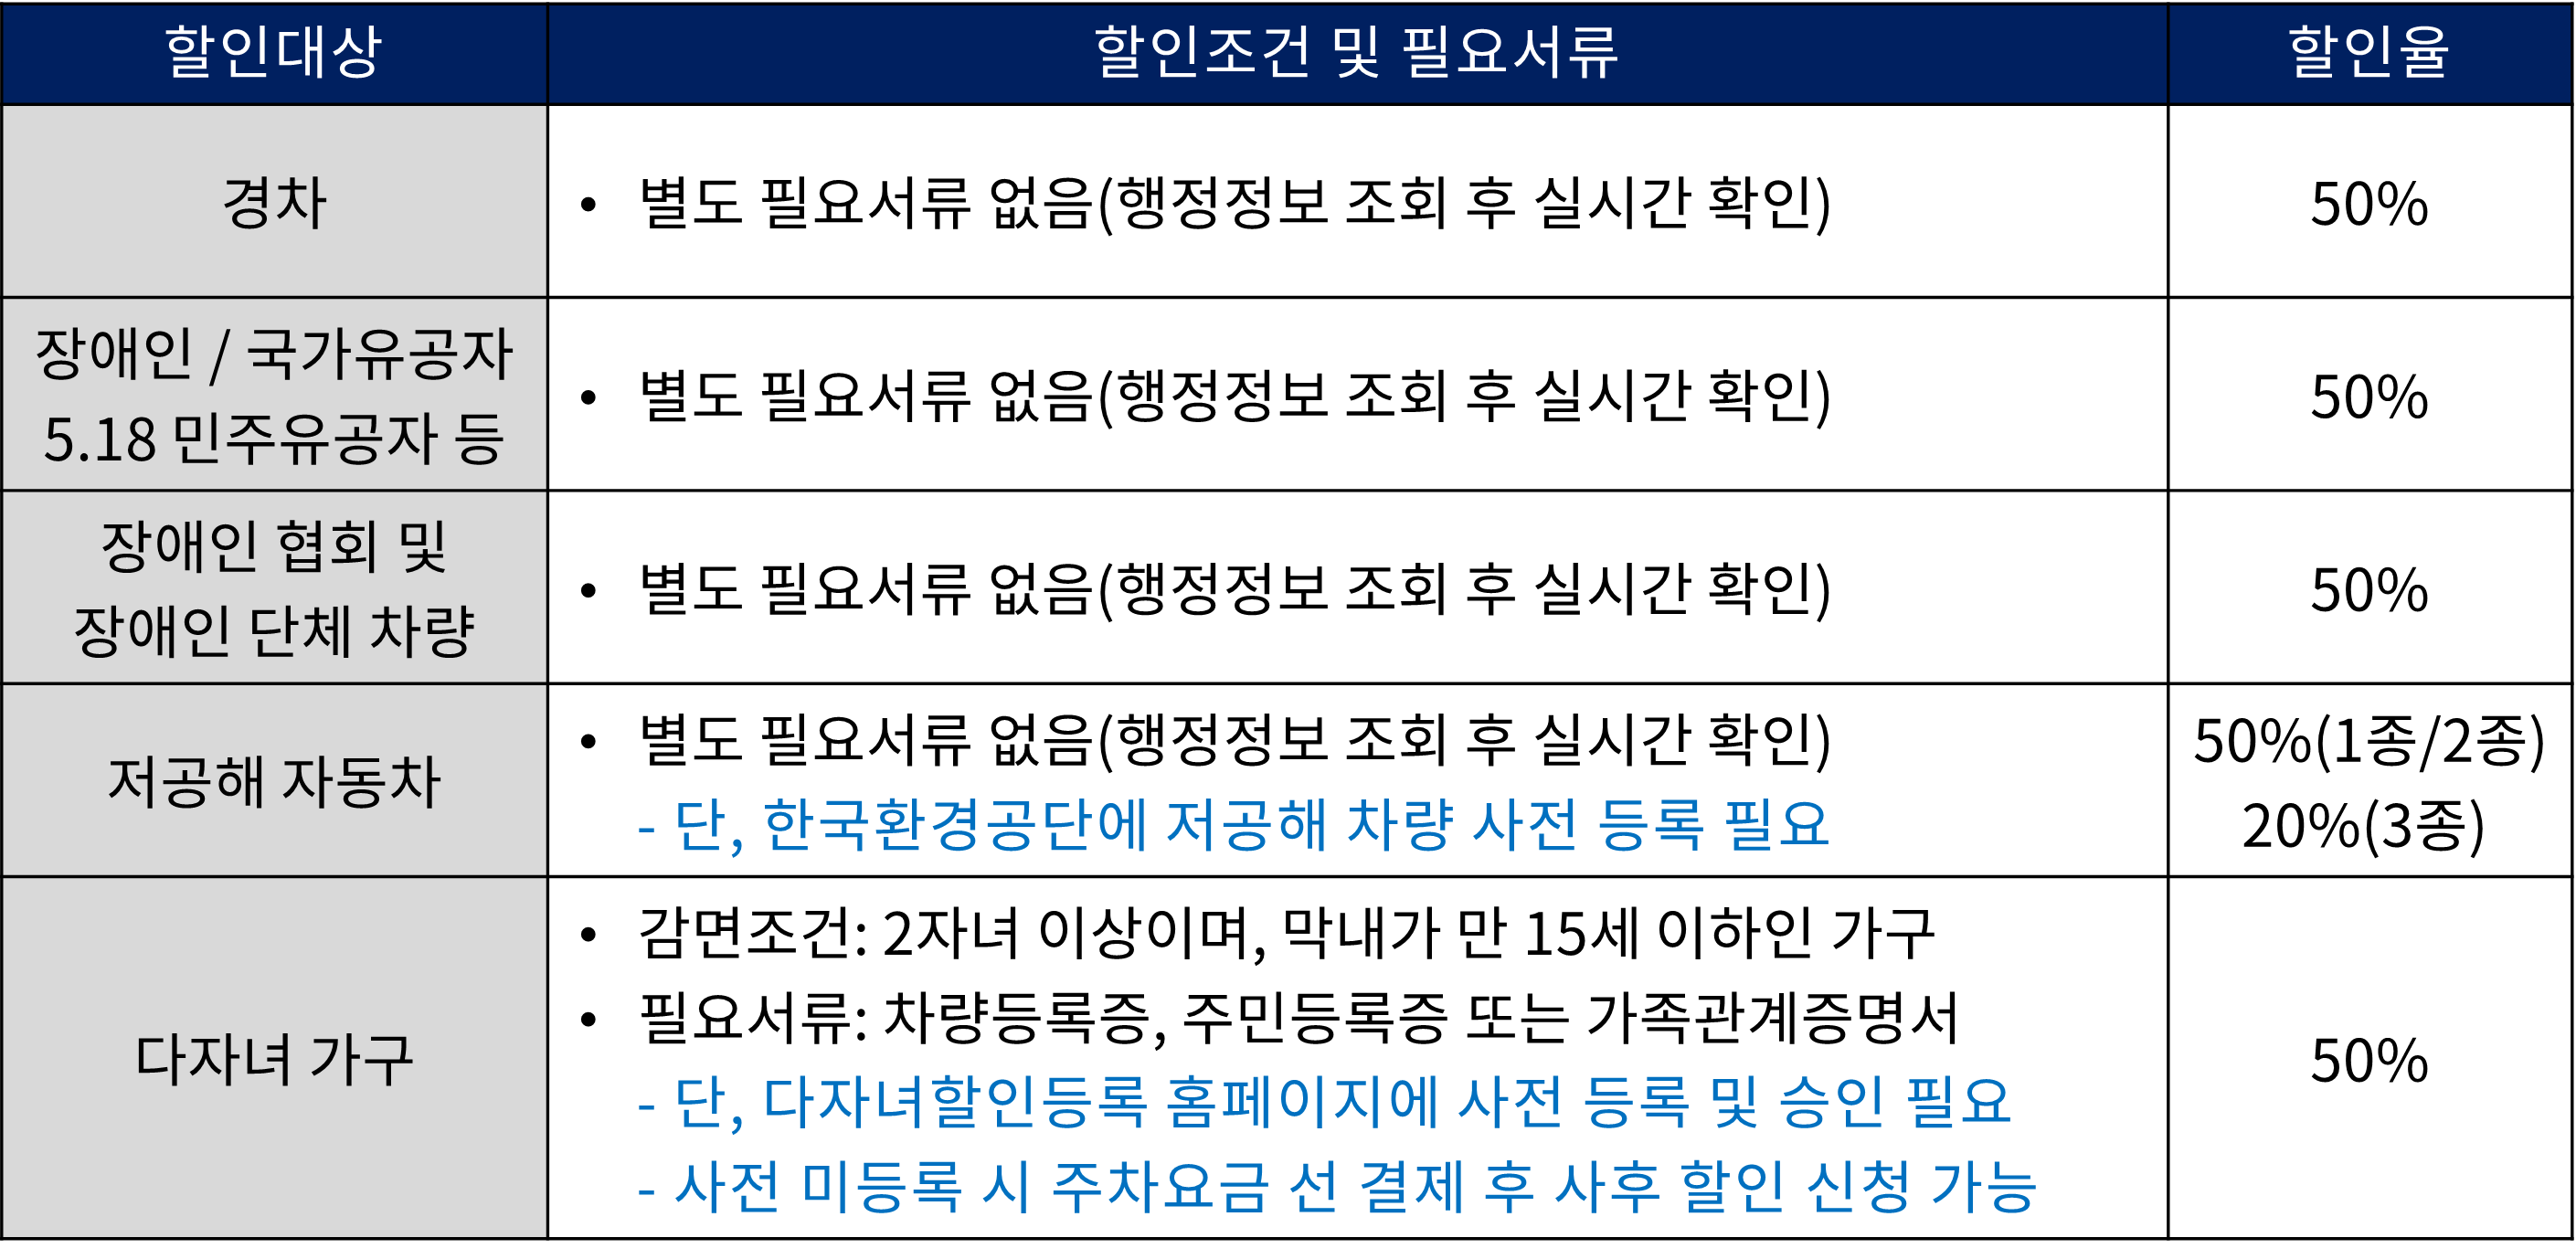 김포공항 주차요금 할인 대상 및 할인율 정보